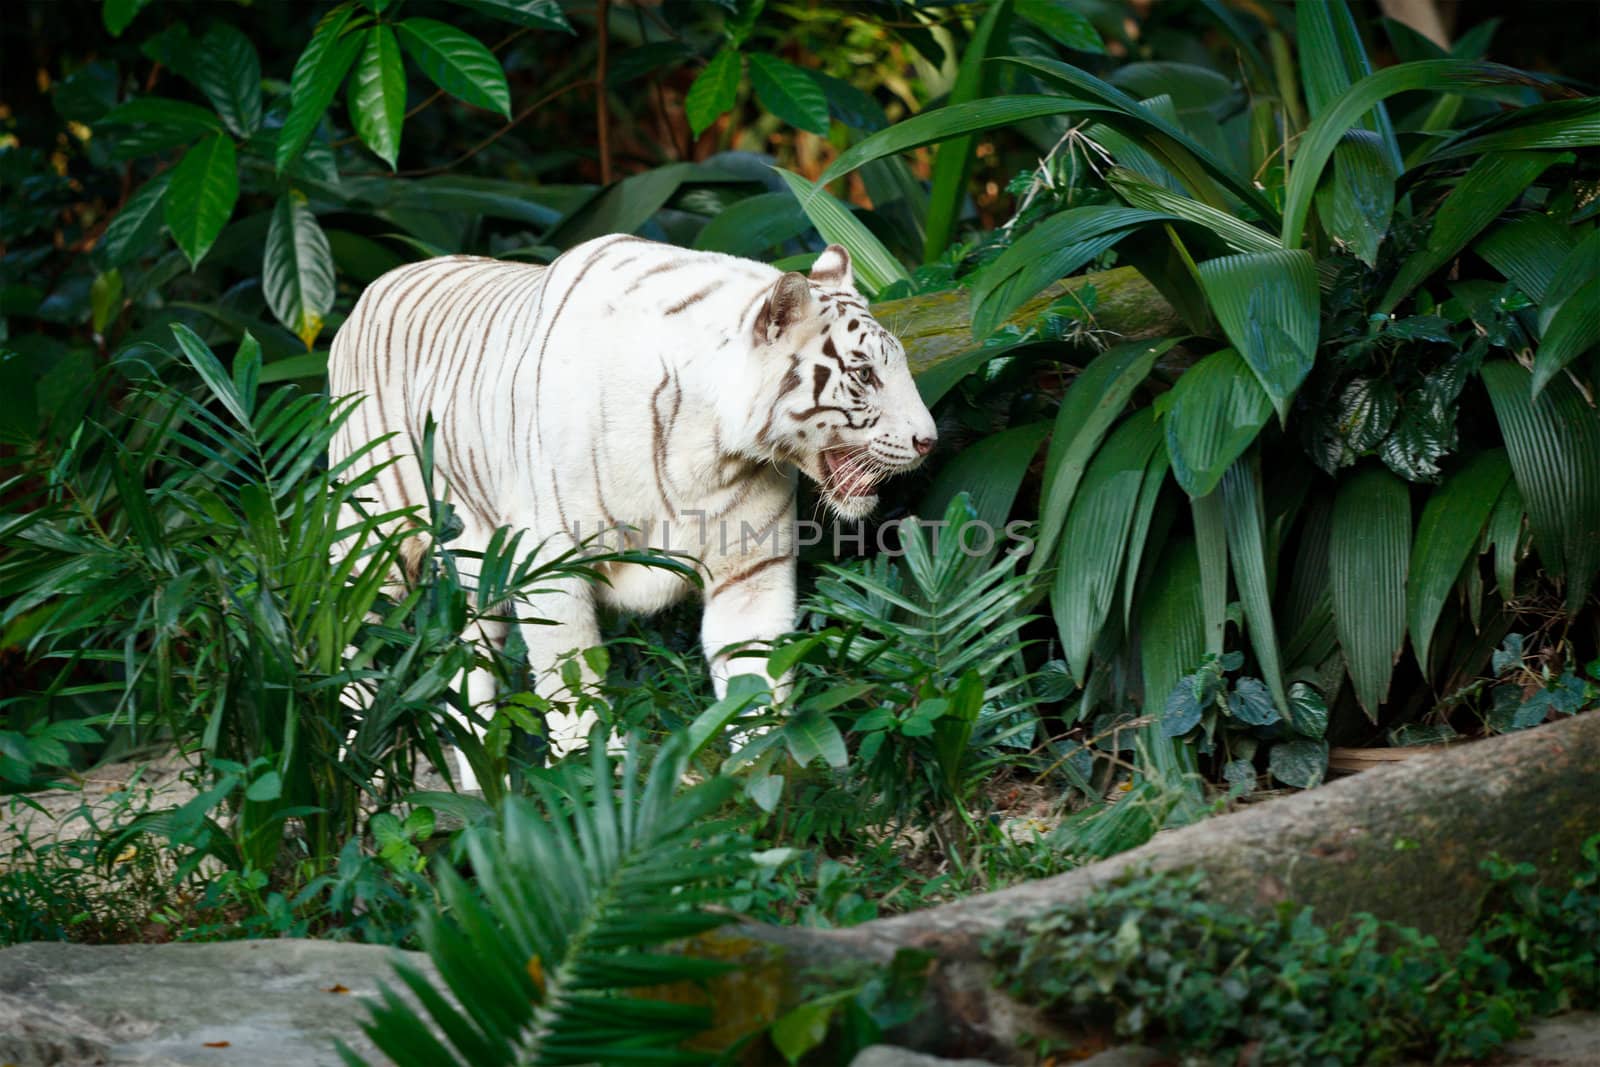 White tiger by dimol